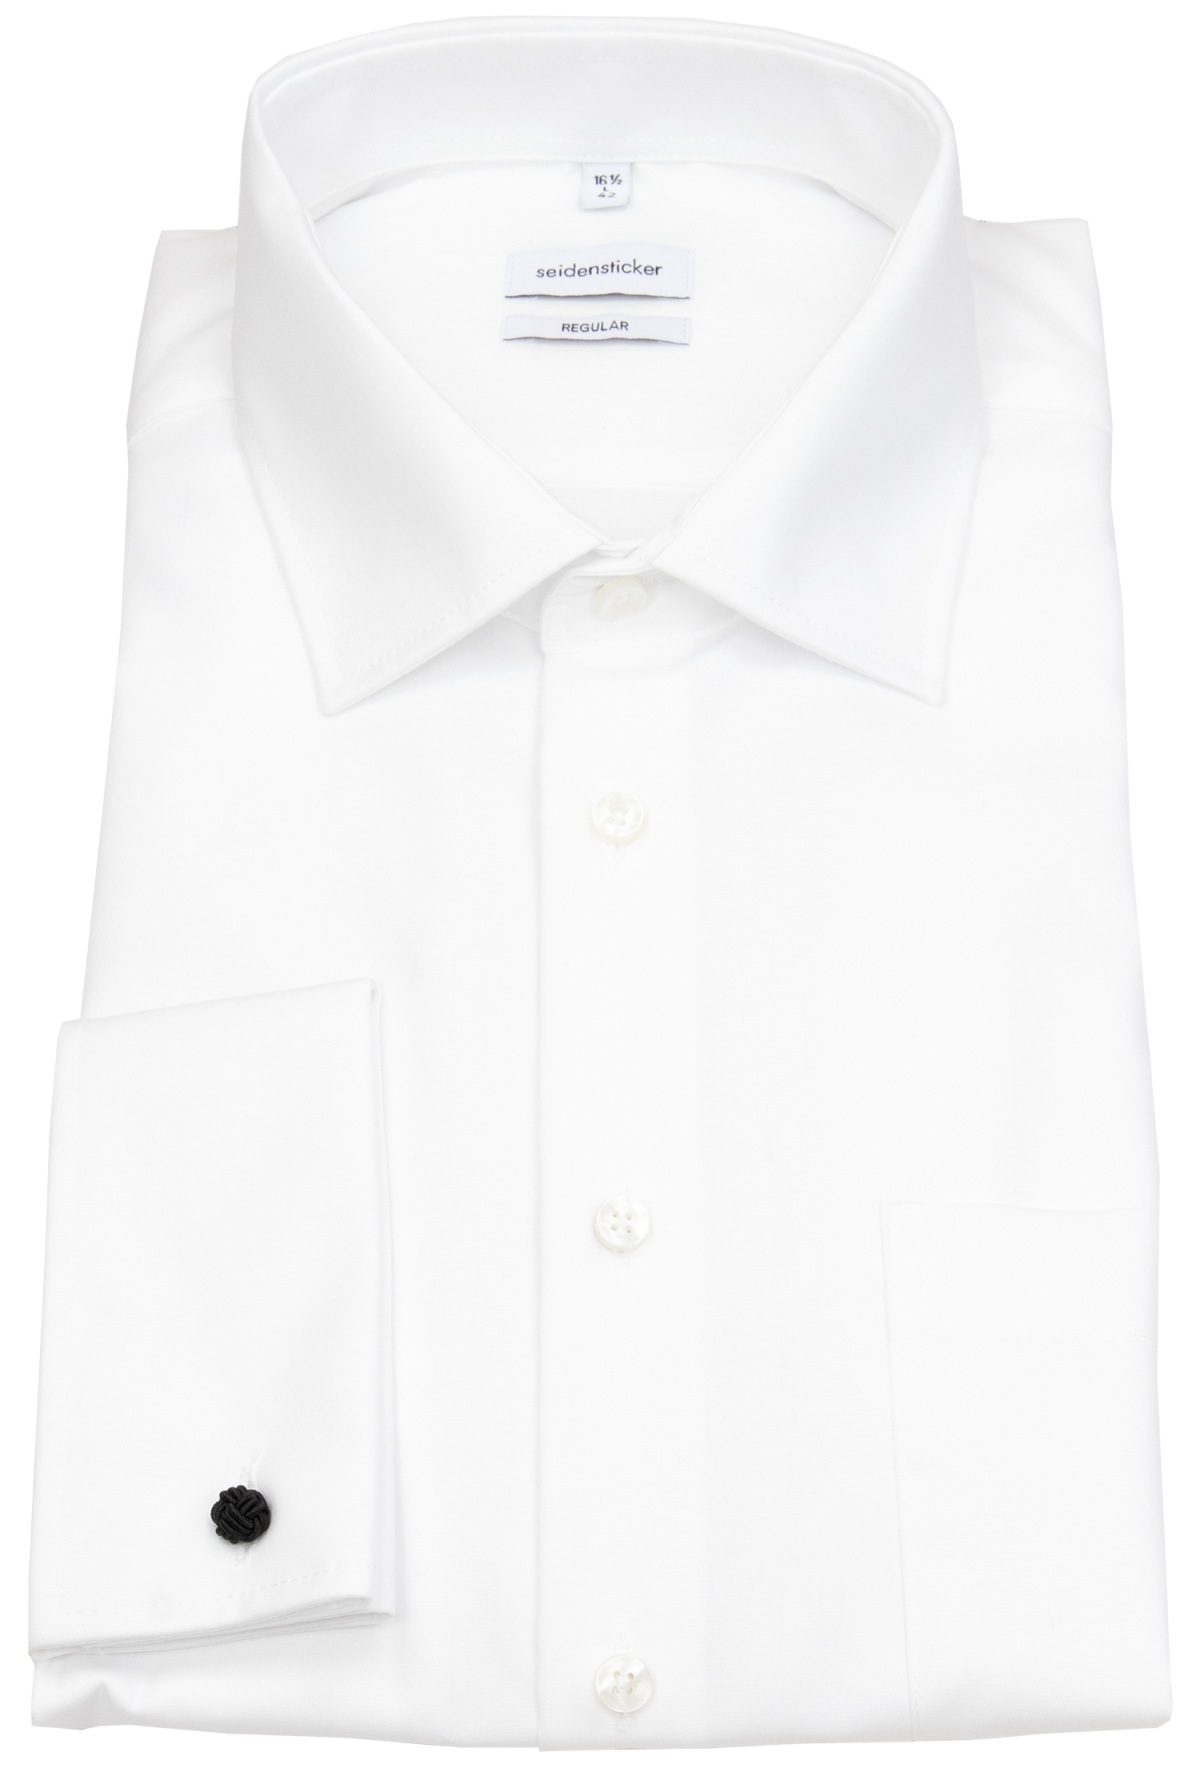 Kentkragen Fit - - Regular - weiß Seidensticker - Hemd Umschlagmanschette